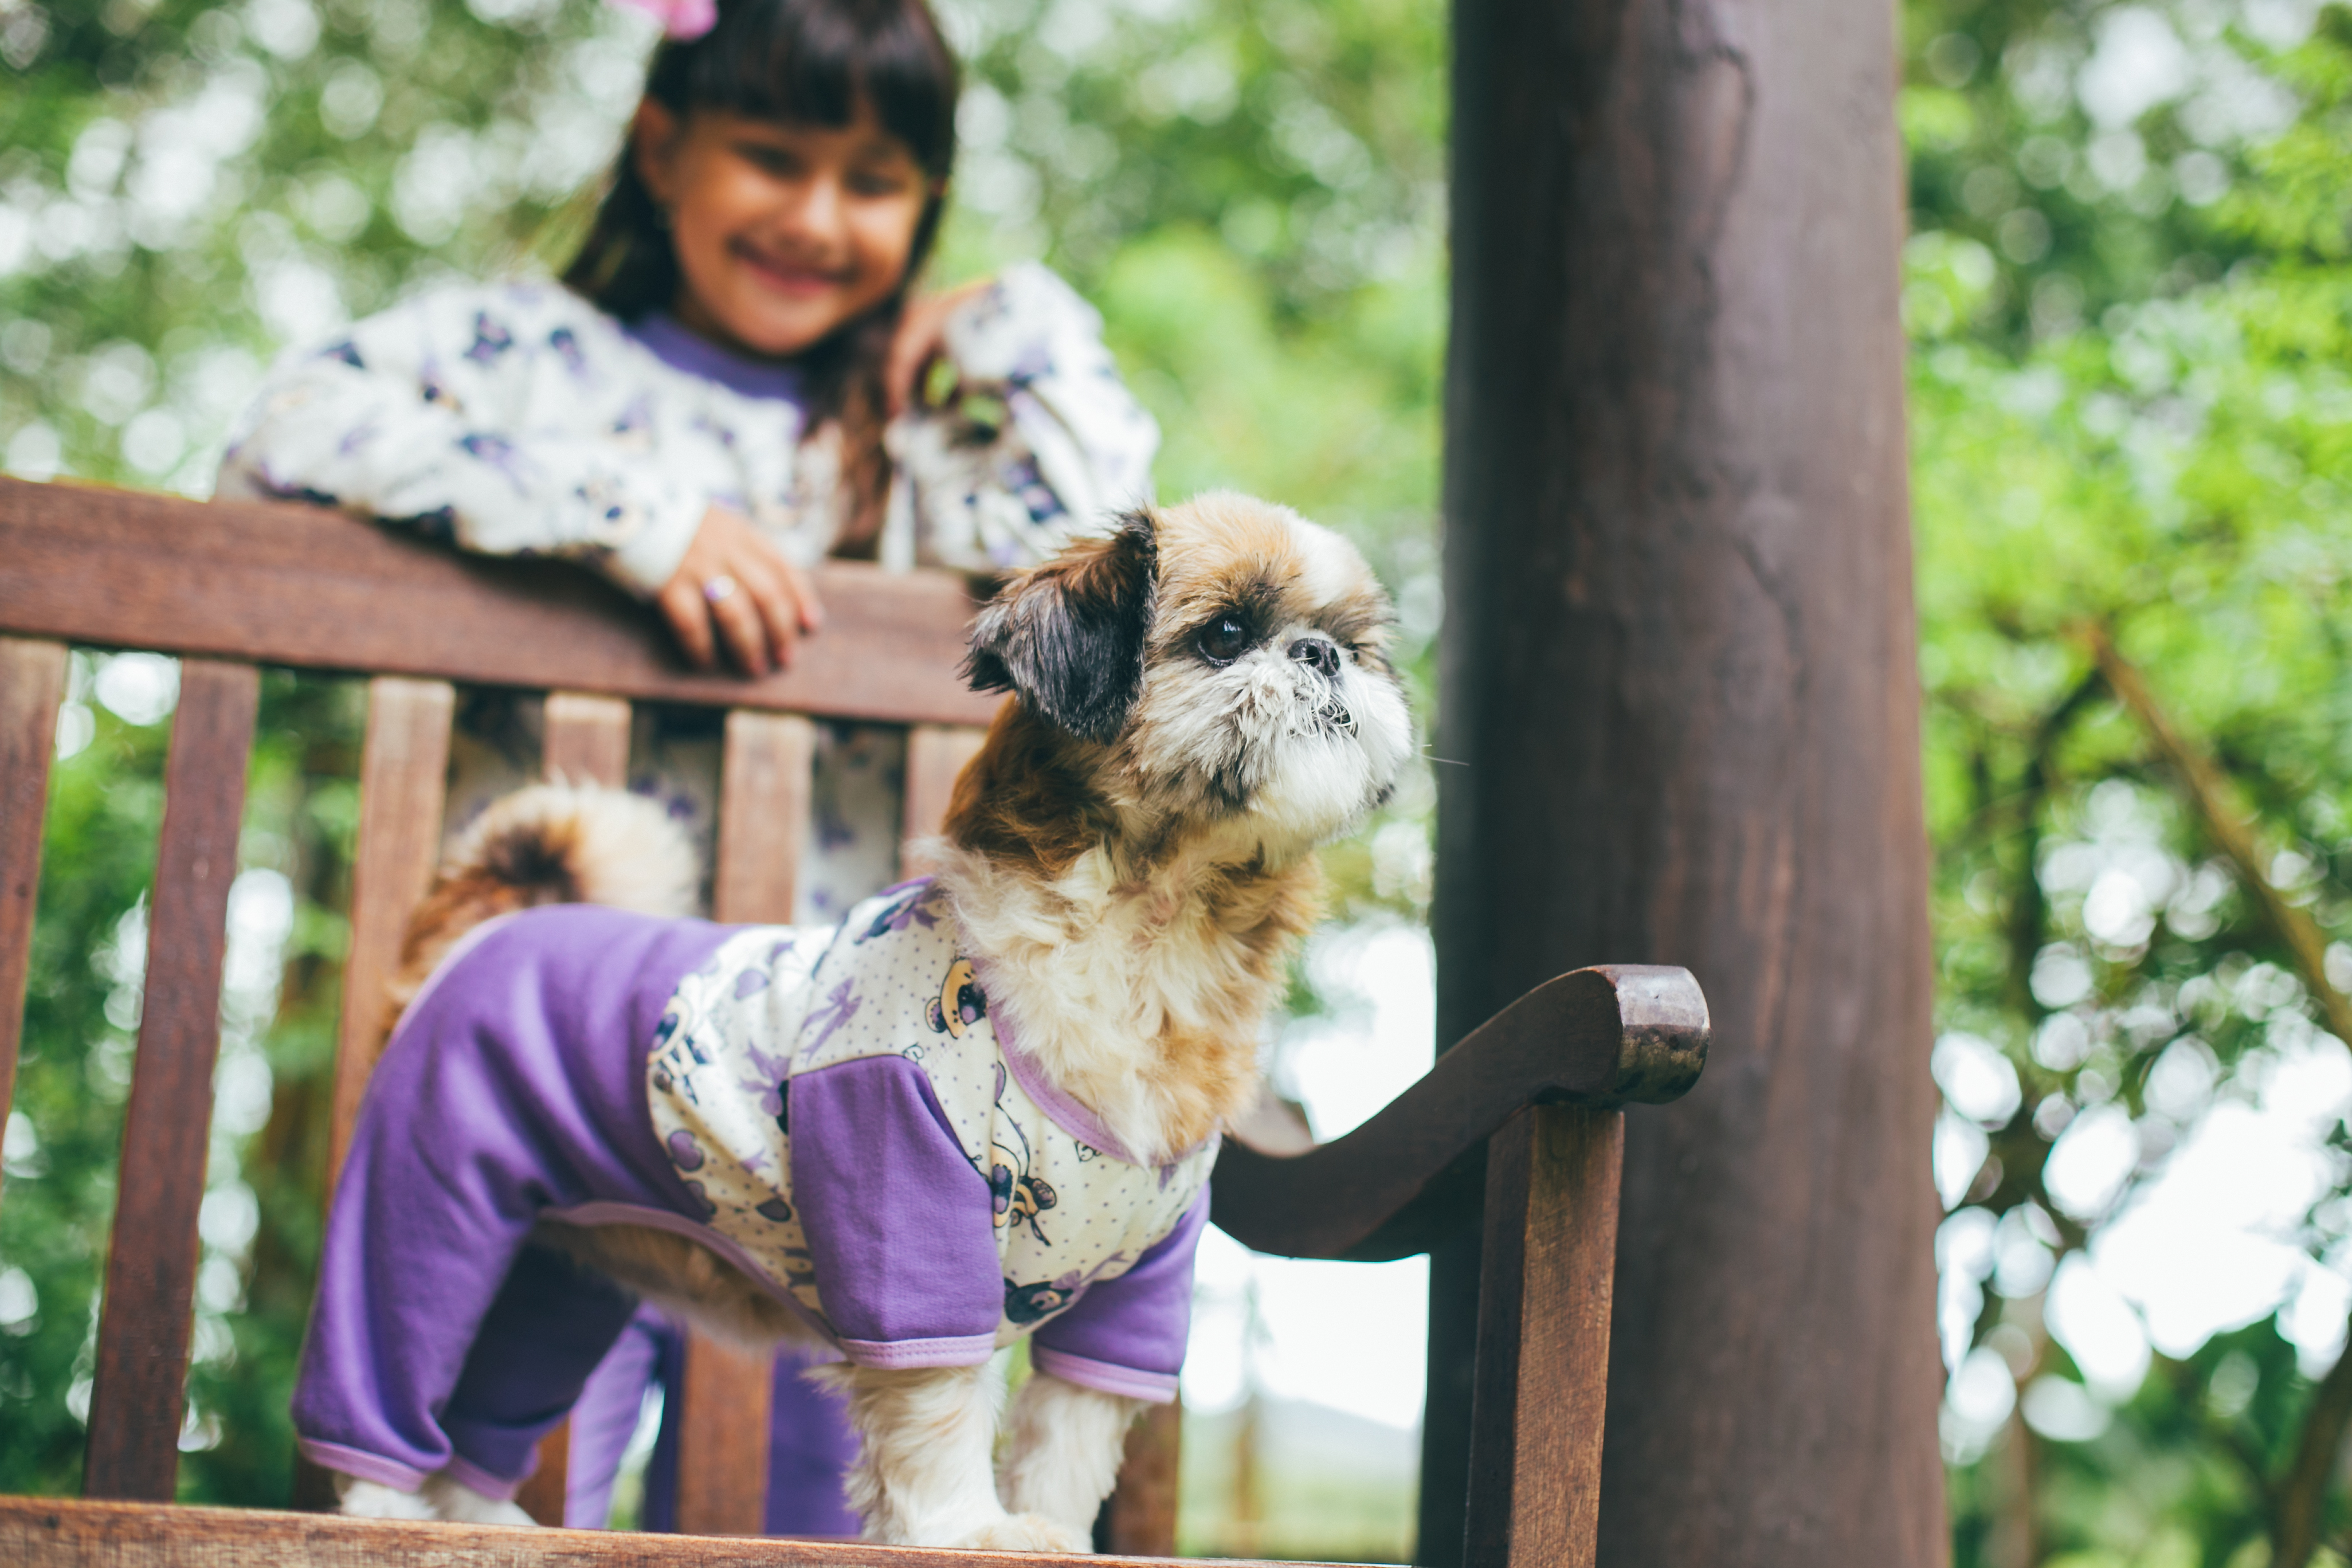 mimos moda pet_ roupas para cachorros_ roupas para crianças e cachorro iguais (3)